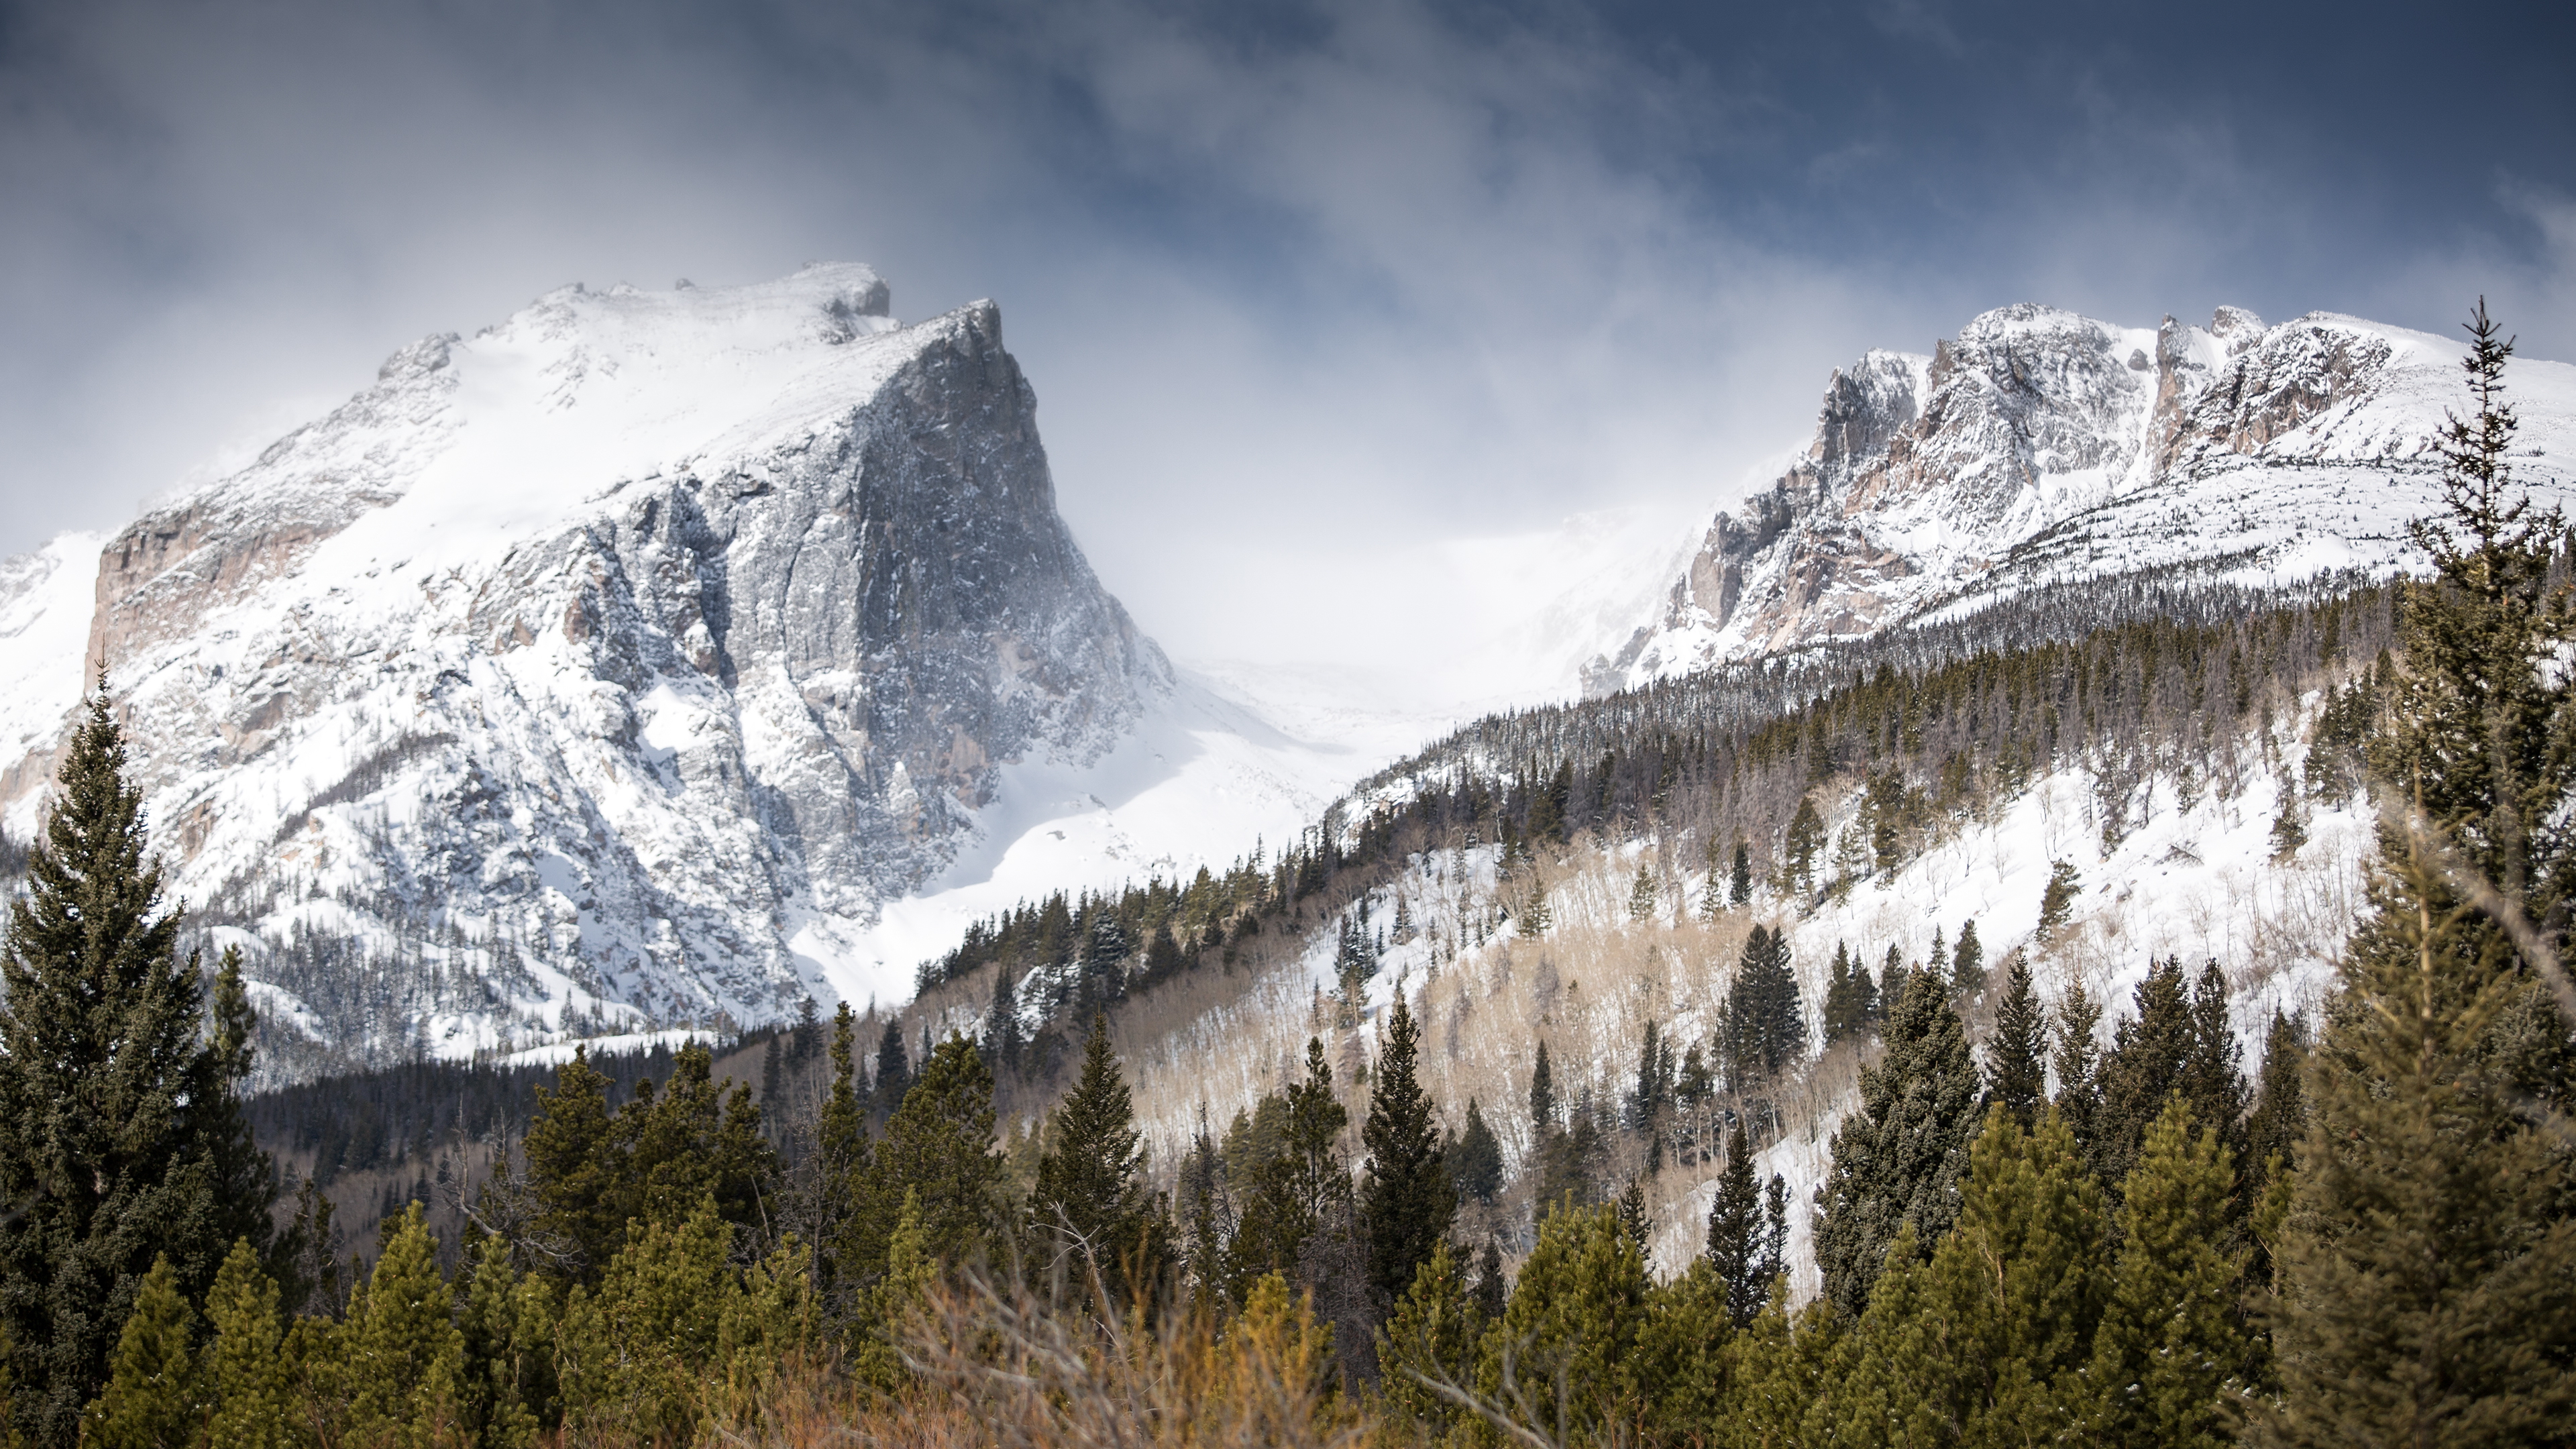 عکس بی نظیر کوهستان برفی با کیفیت بالا ویژه استفاده برای چاپ و طراحی